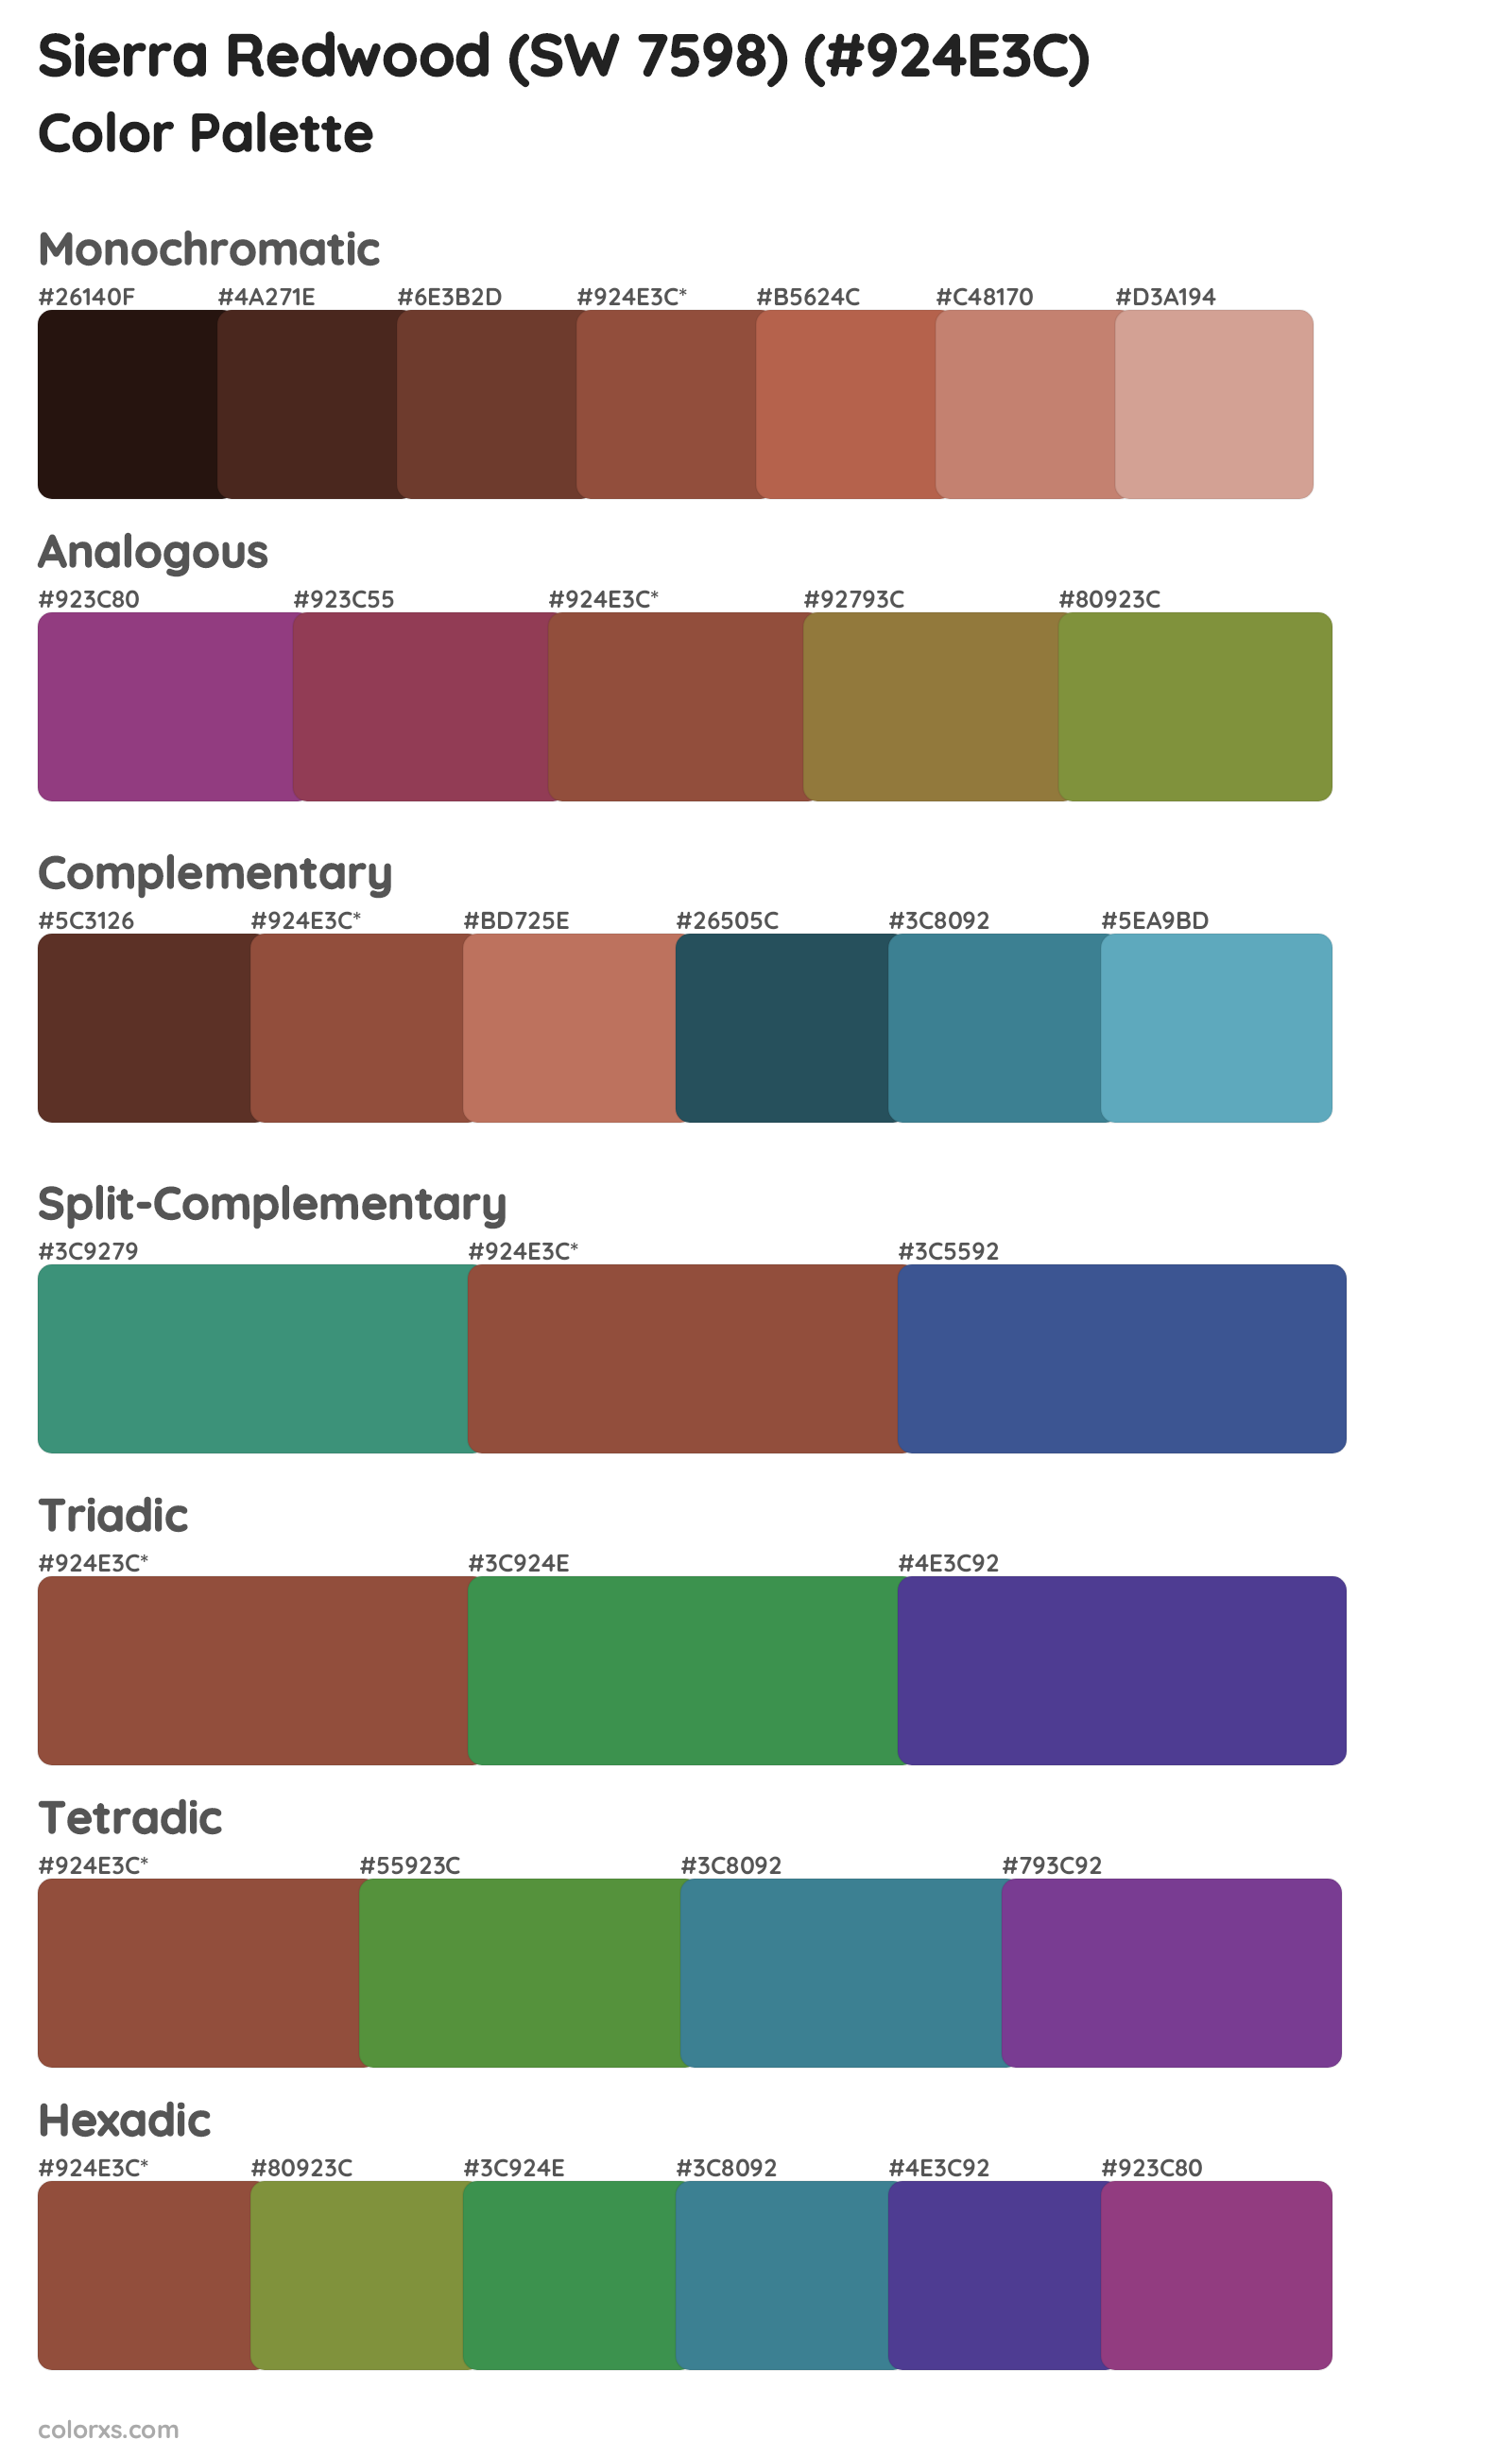 Sierra Redwood (SW 7598) Color Scheme Palettes